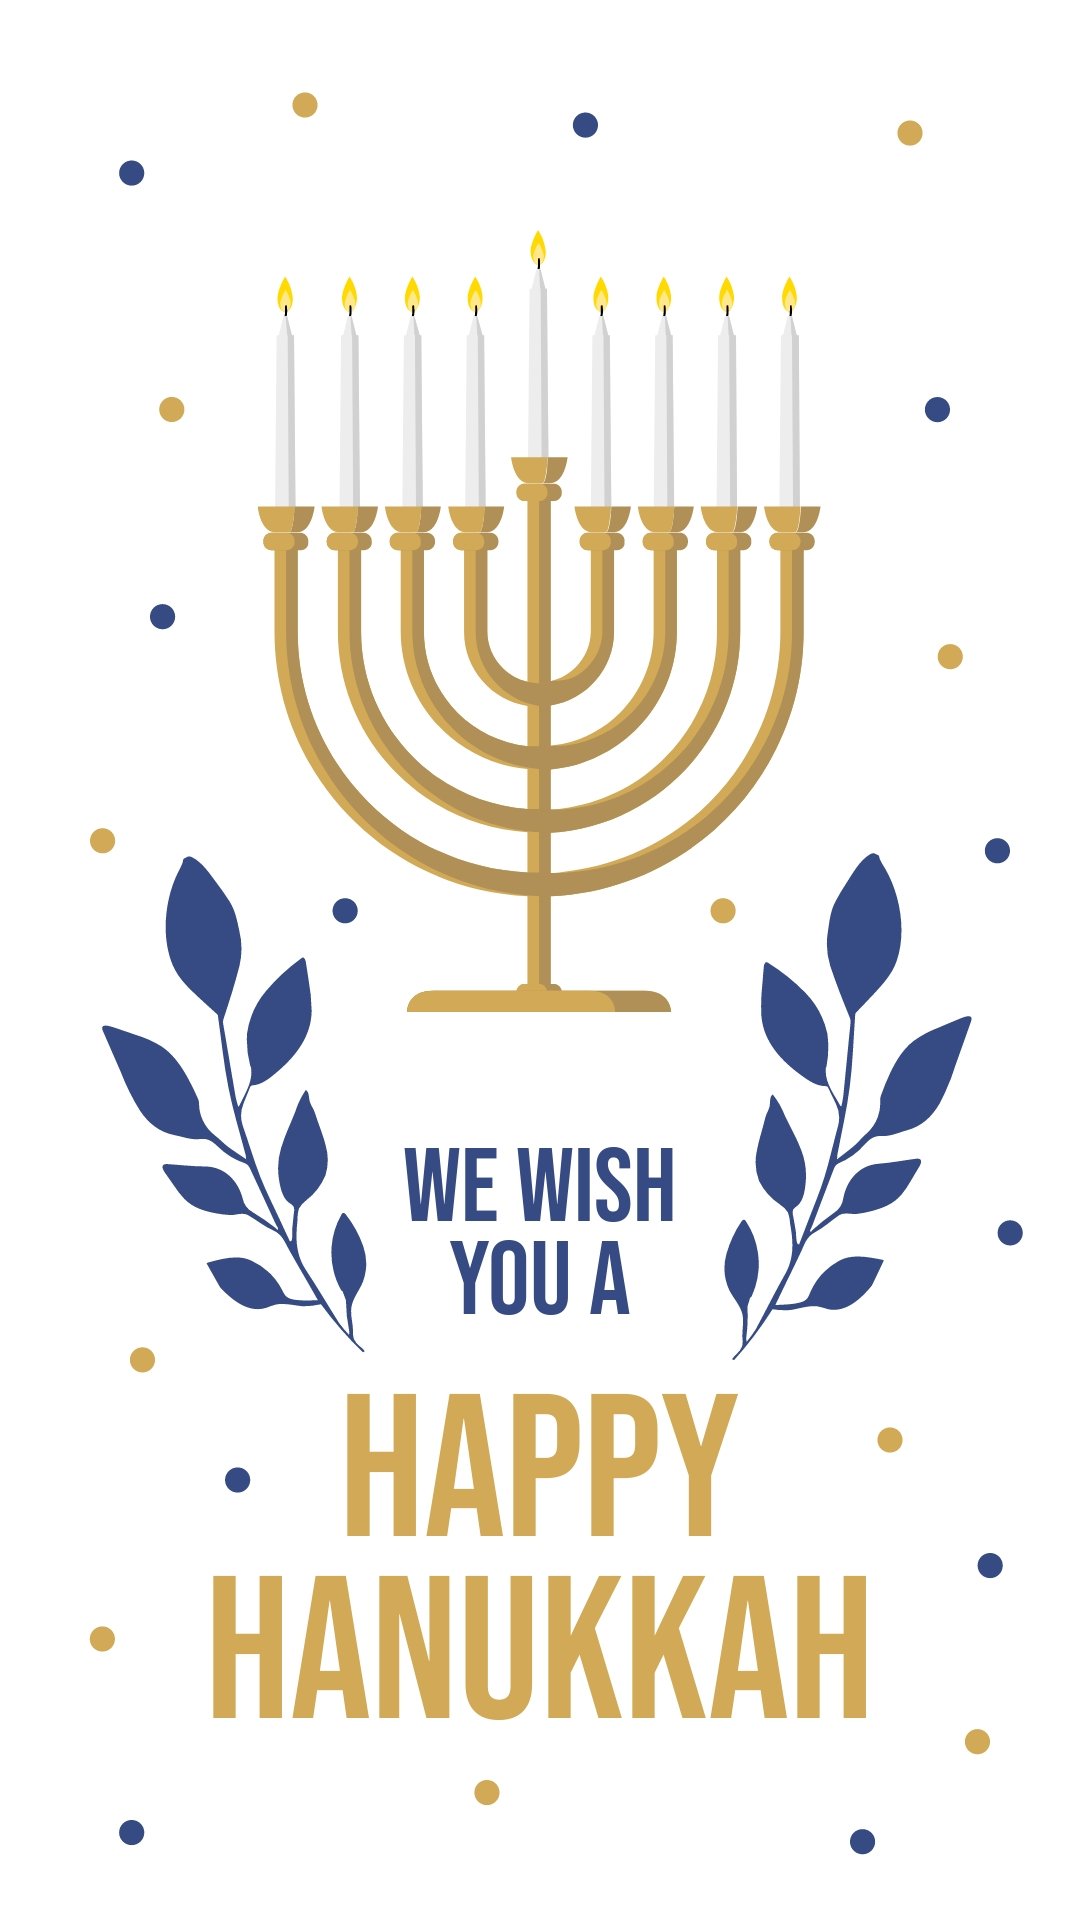 Happy Hanukkah Instagram Story Template